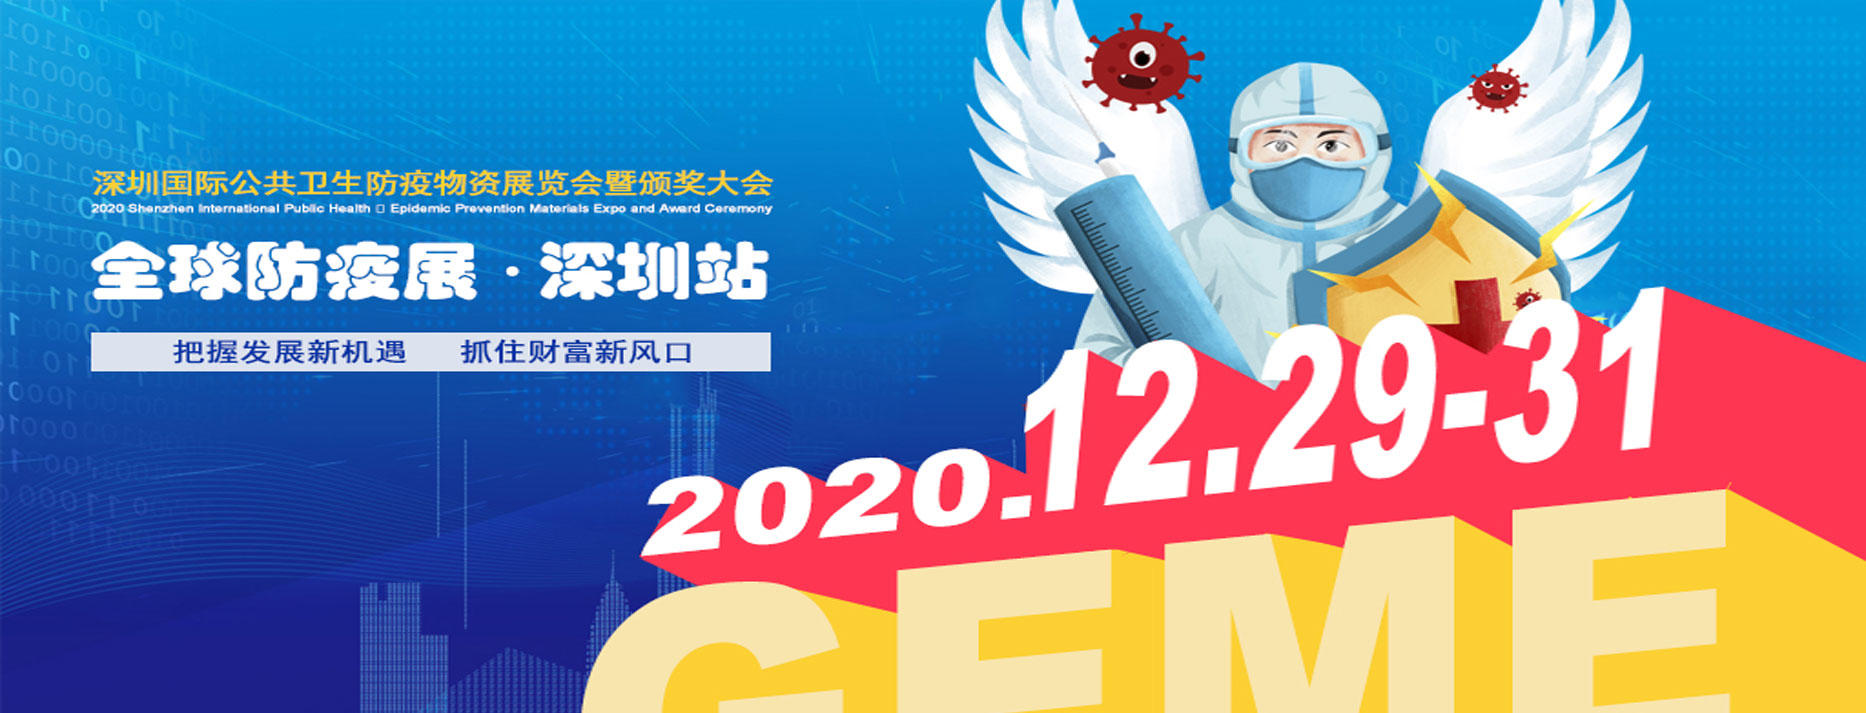 Participation à la publication geme 2020, 29 - 31 décembre, Shenzhen